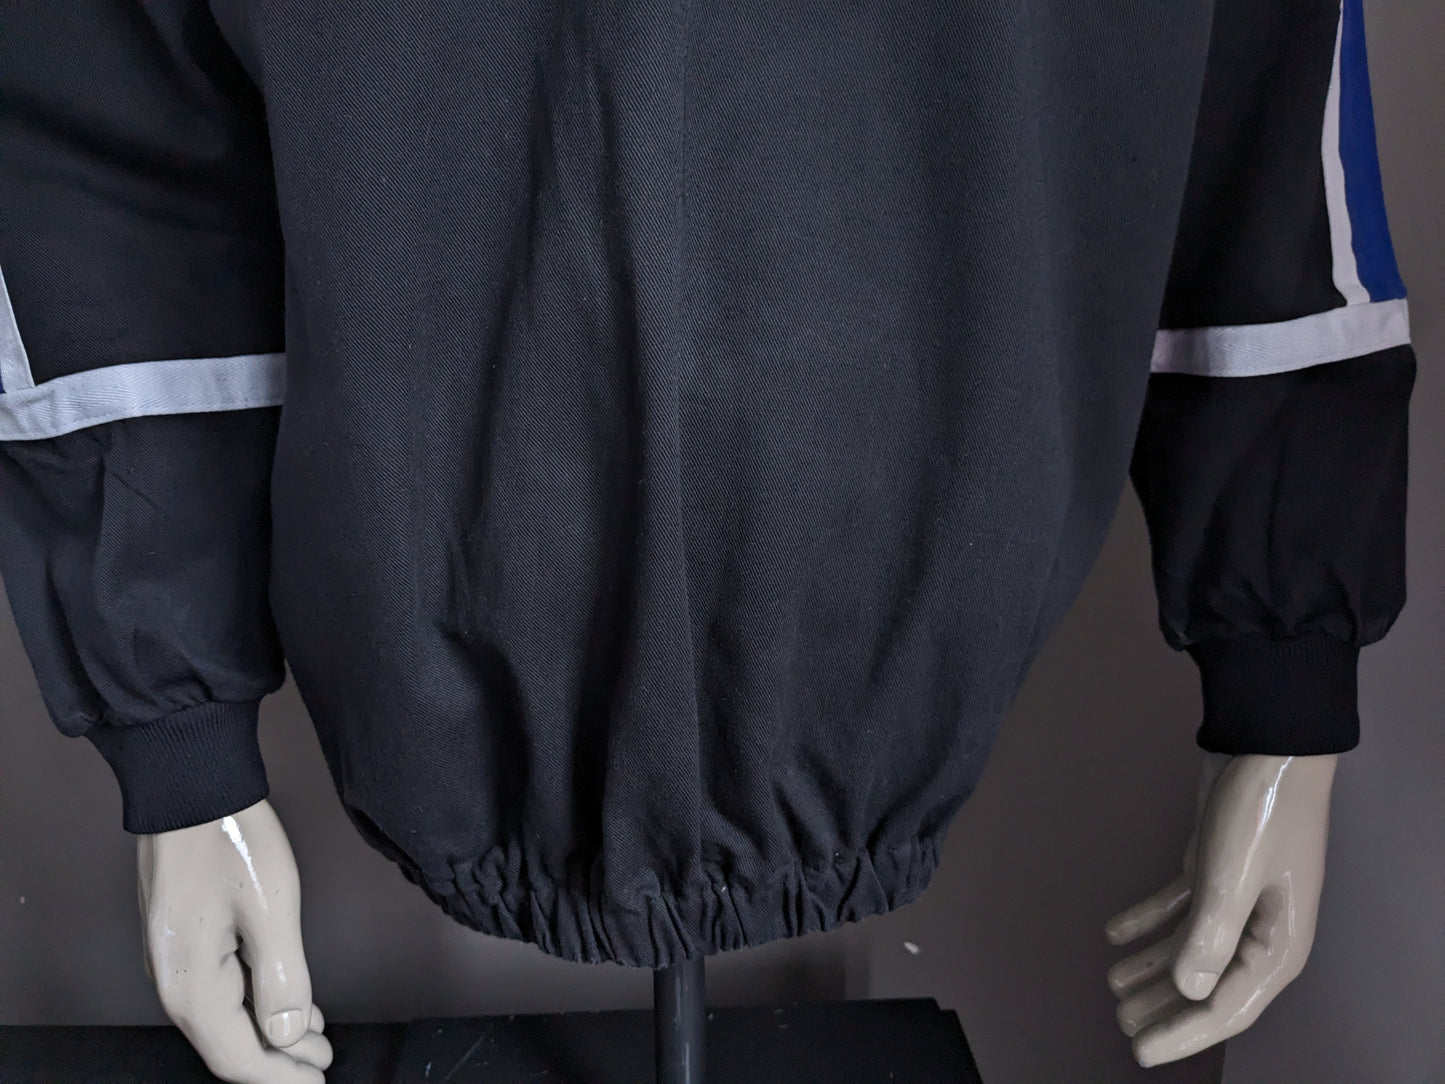 Séter de polo original de Mizuno "Reading Football Club". Black White Blue de color. Tamaño XL